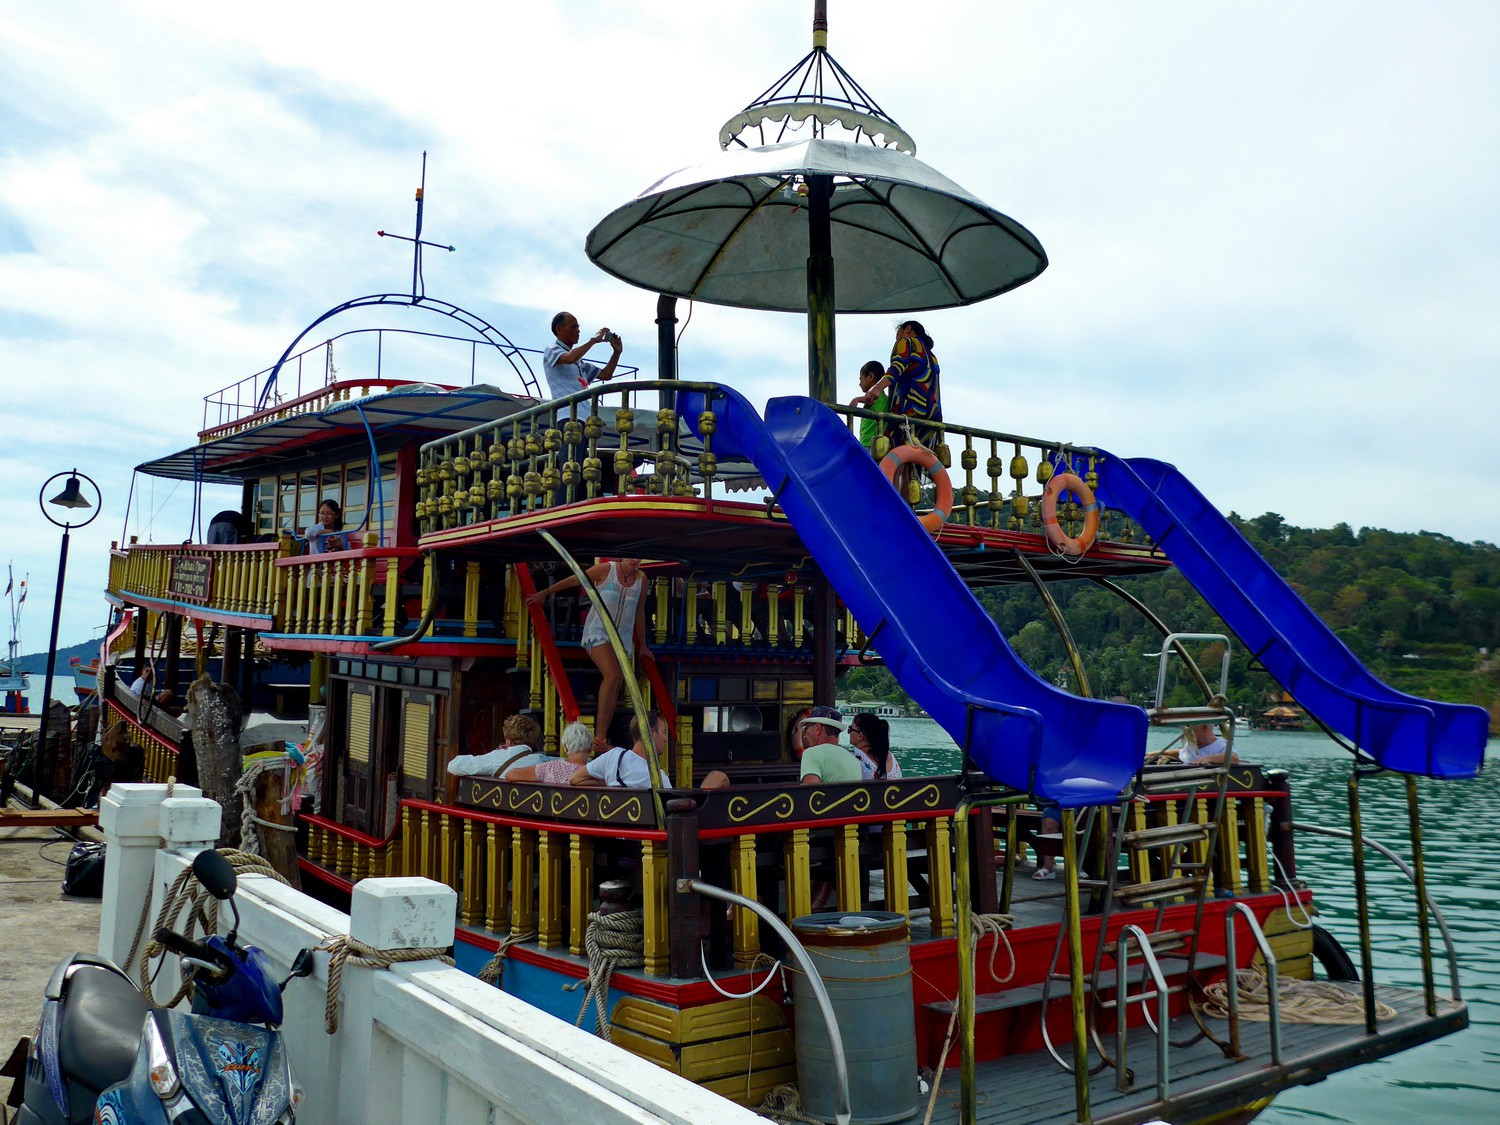 Our excursion boat of Mr Khai